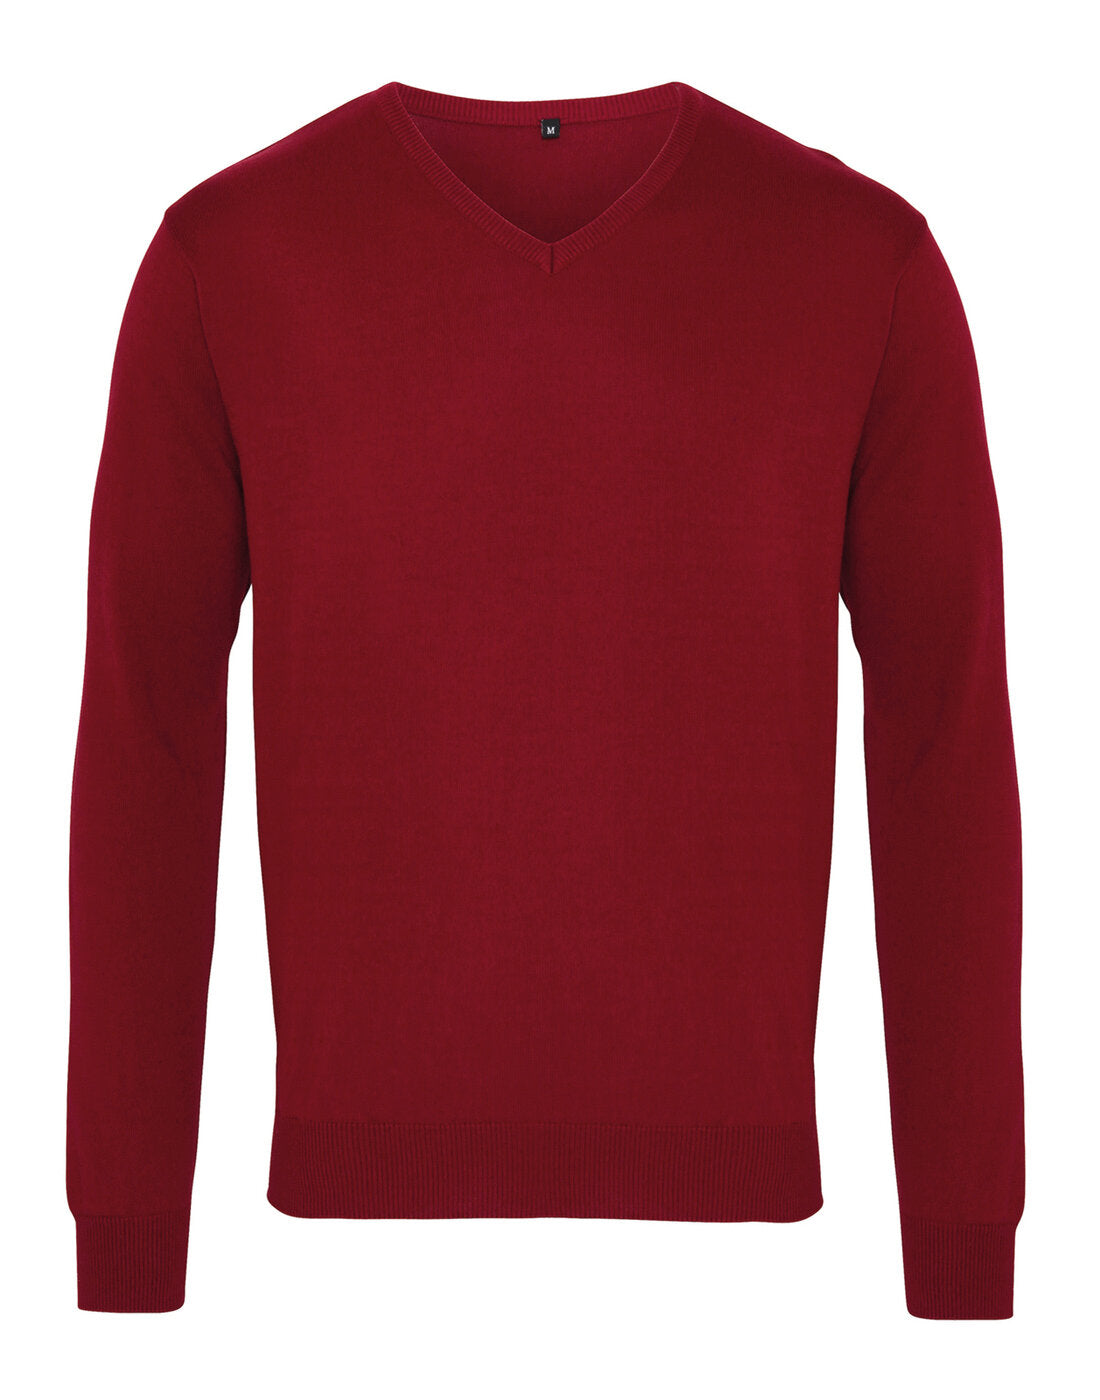 Premier Men's Knitted V-Neck Sweater